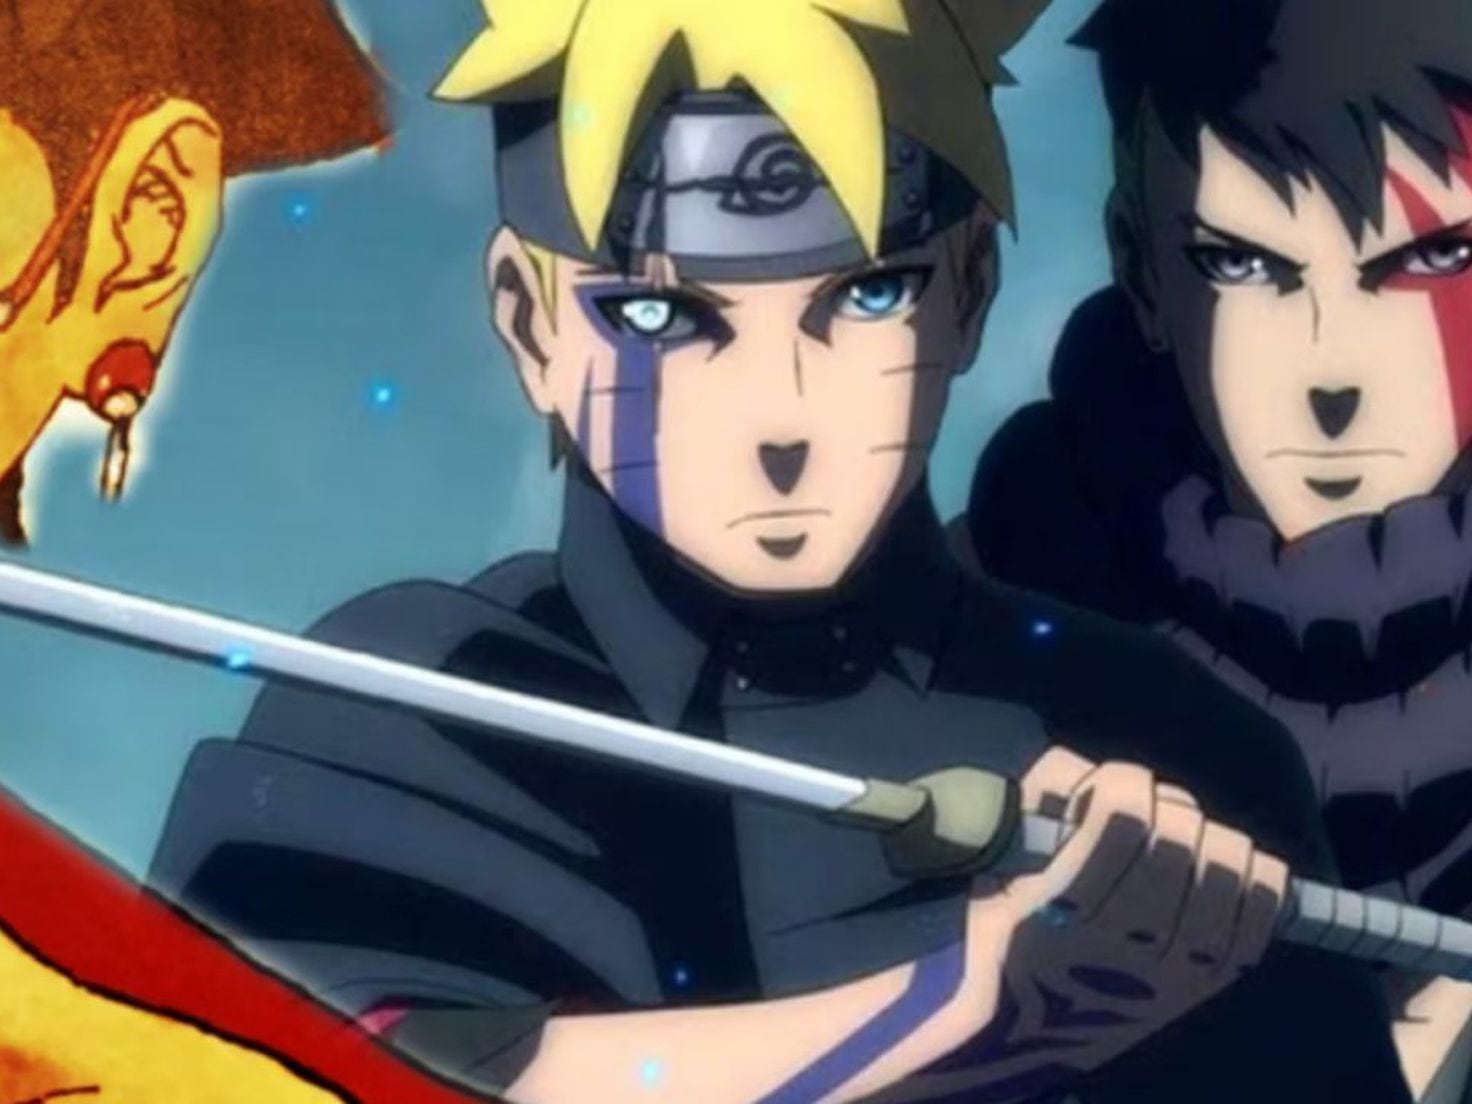 Boruto Naruto Next Generations  Naruto comic, Naruto characters, Naruto